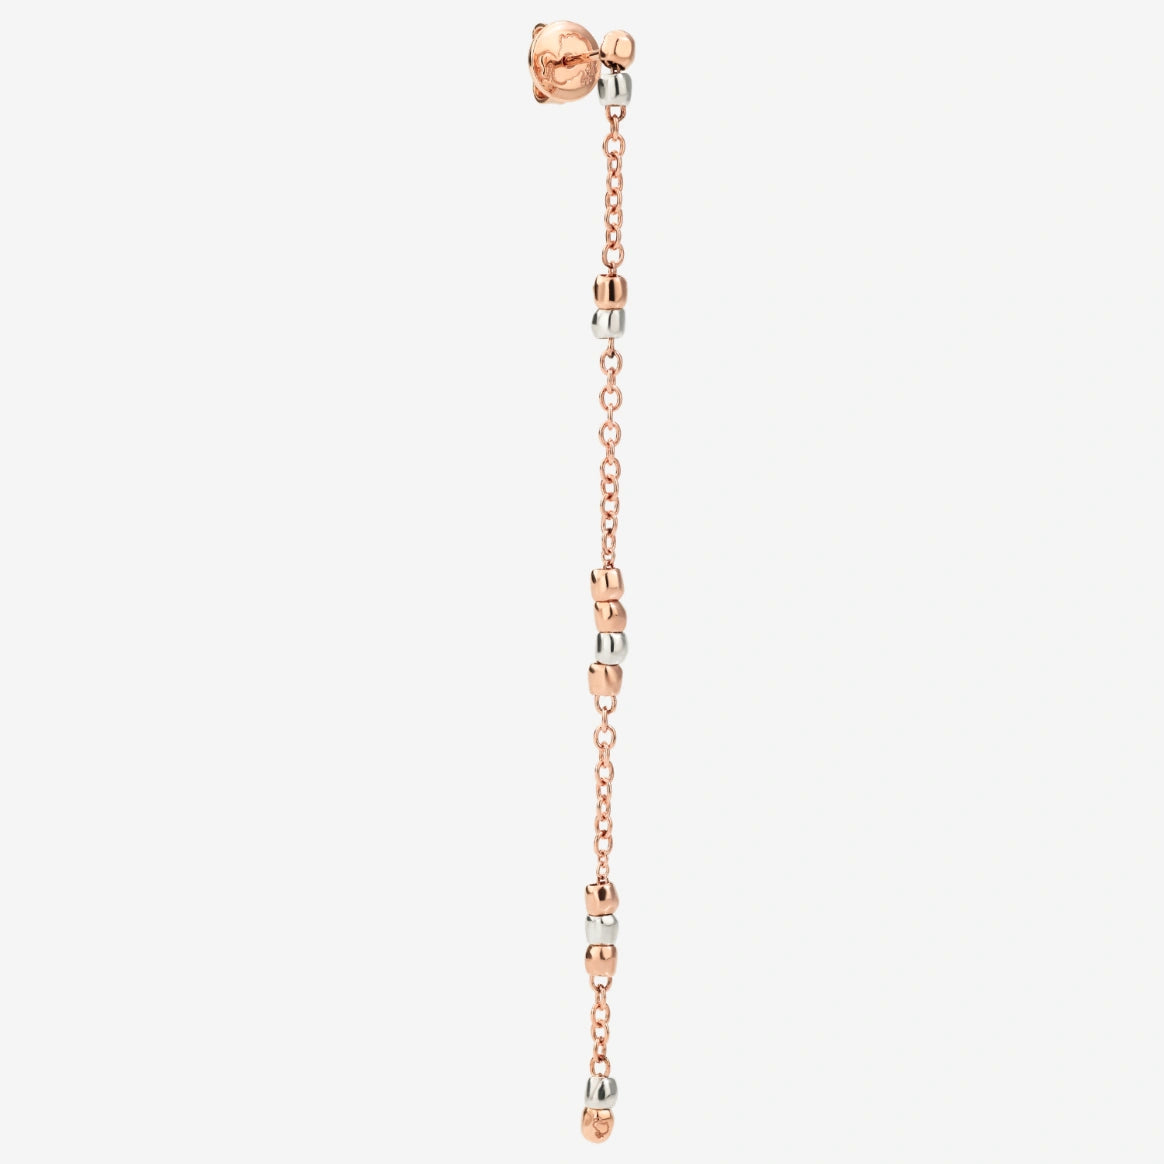 DoDo GRANELLI Mini Granelli Pendant Earrings in Rose Gold and Silver - Orsini Jewellers